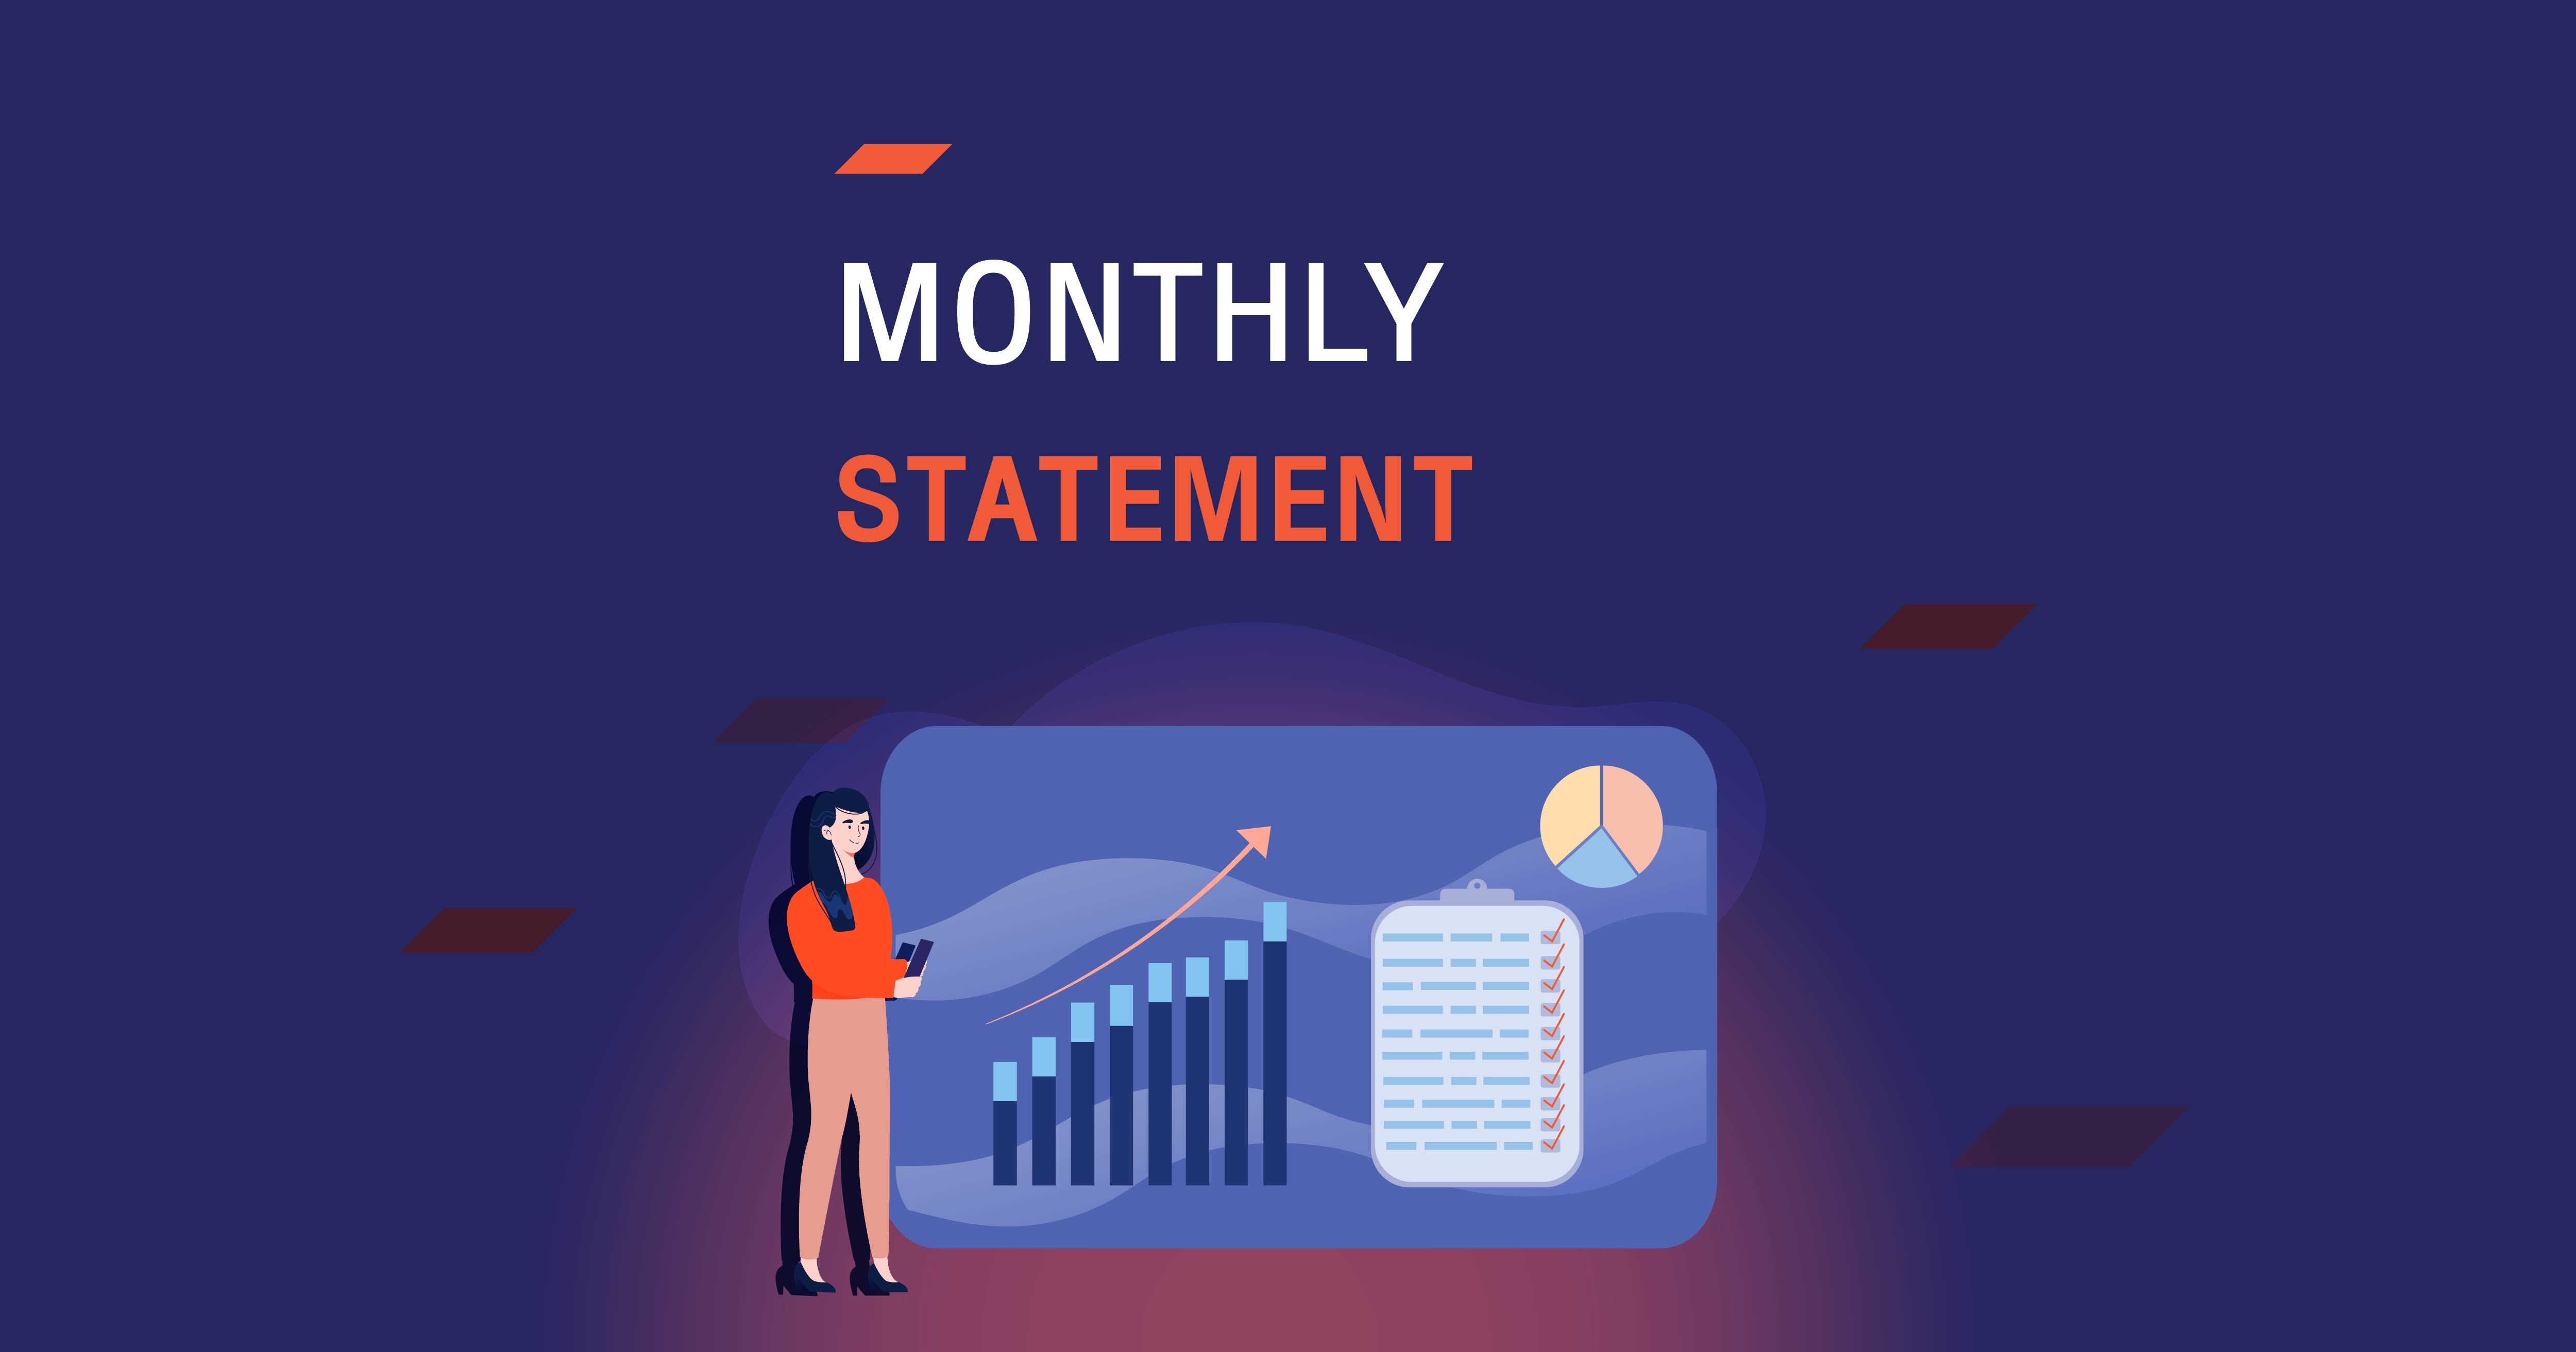 Monthly Statement รายงานผลการลงทุนทุกเดือน